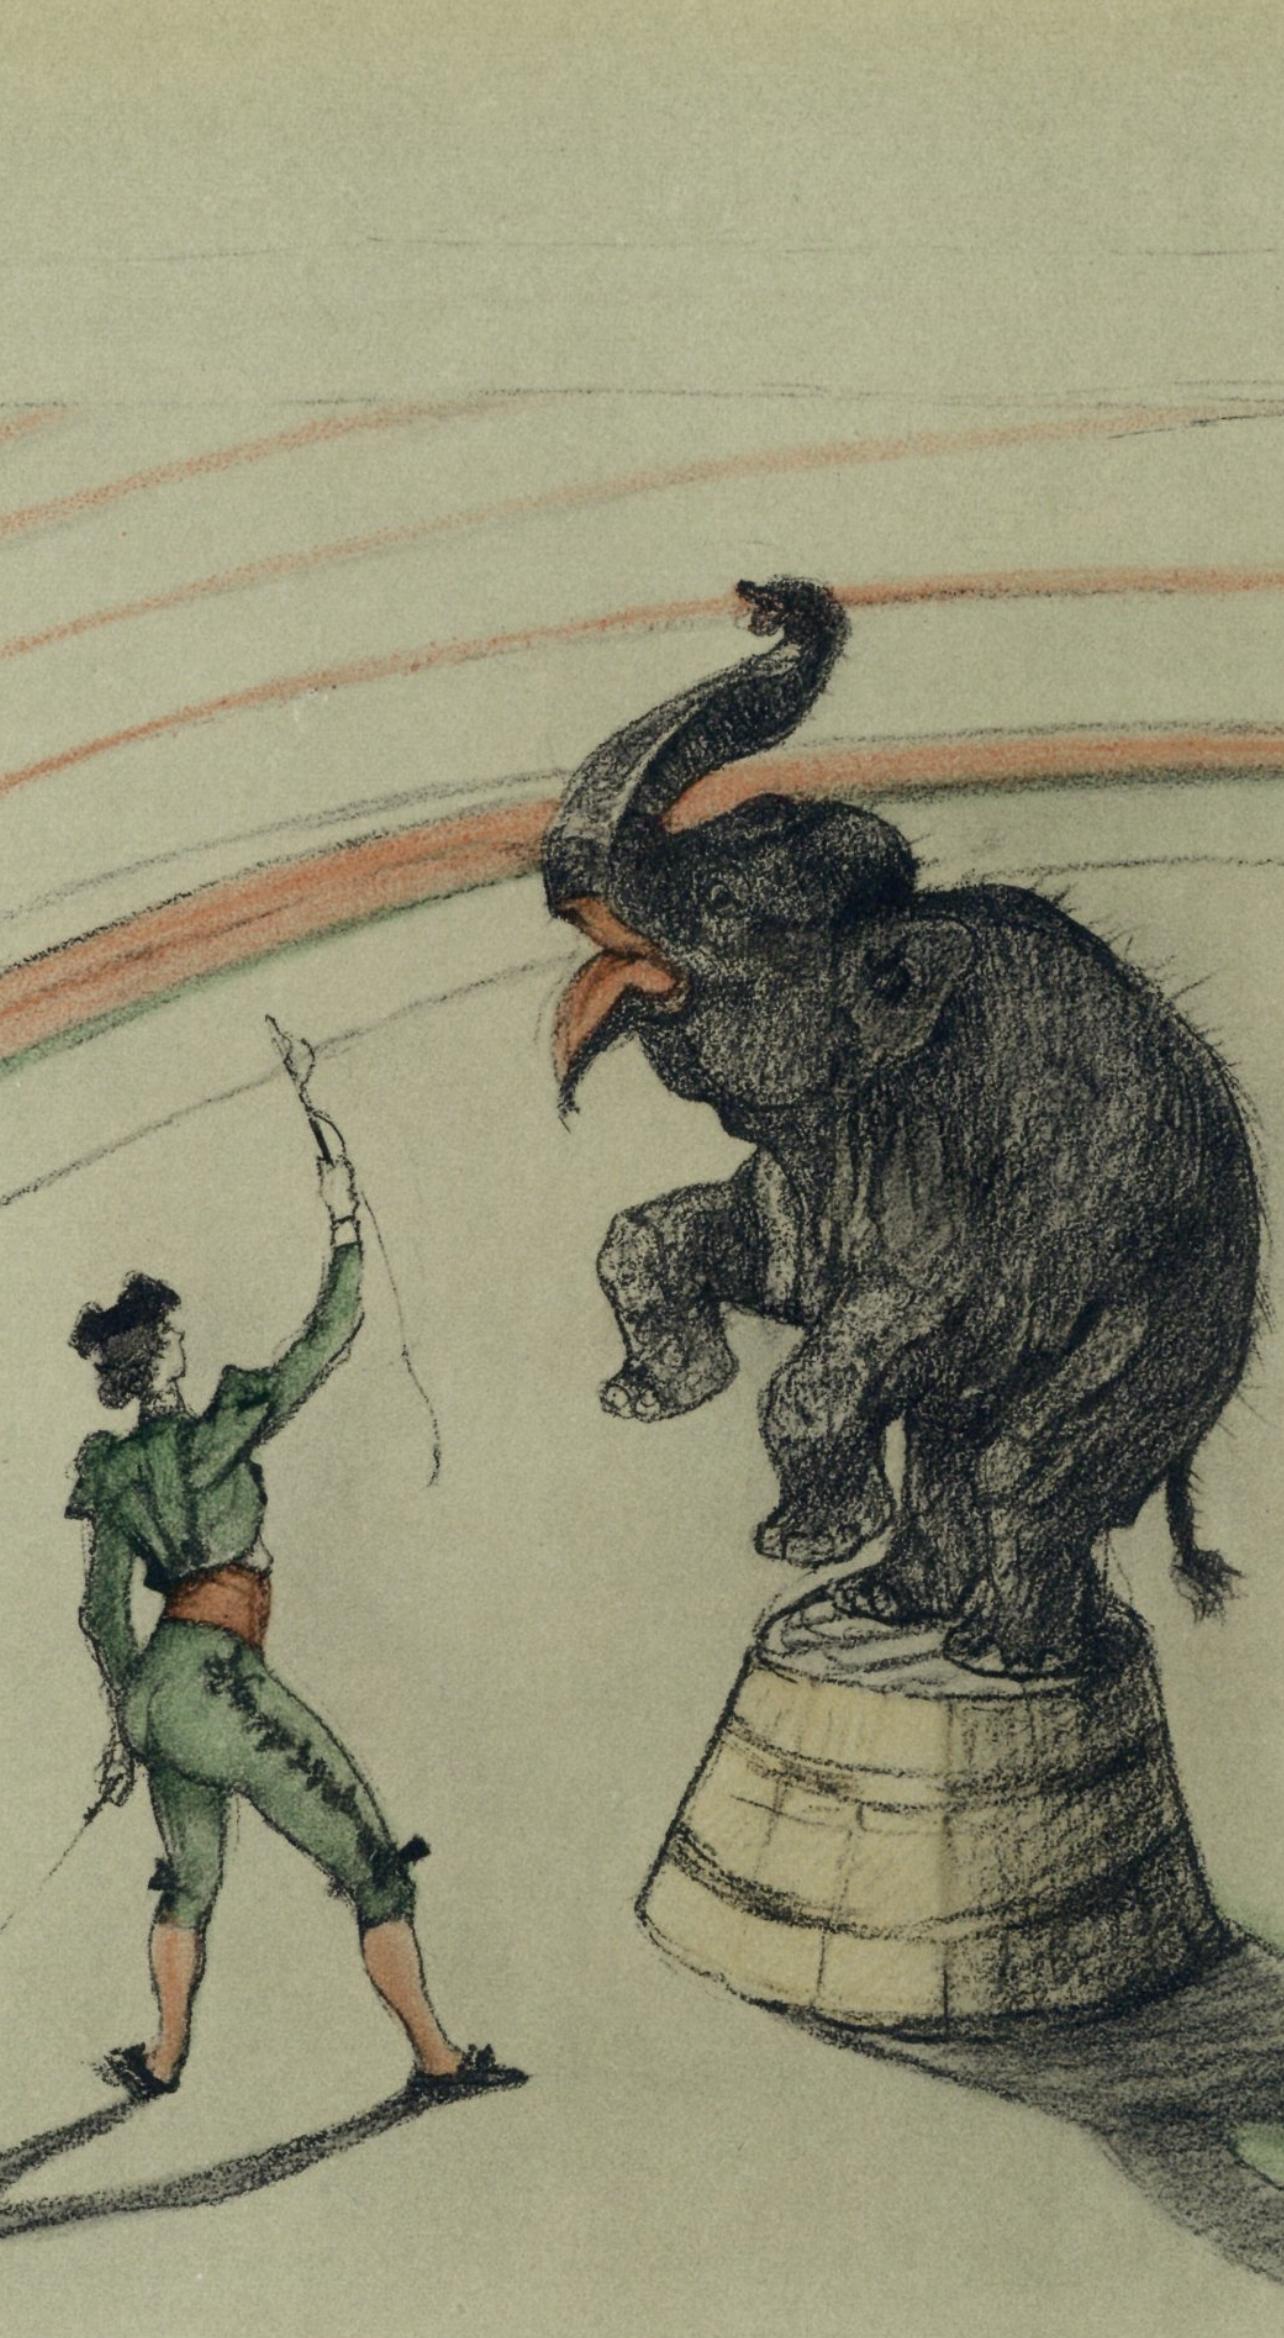 Toulouse-Lautrec, Elephant en liberte, The Circus by Toulouse-Lautrec (after) - Print by Henri de Toulouse-Lautrec